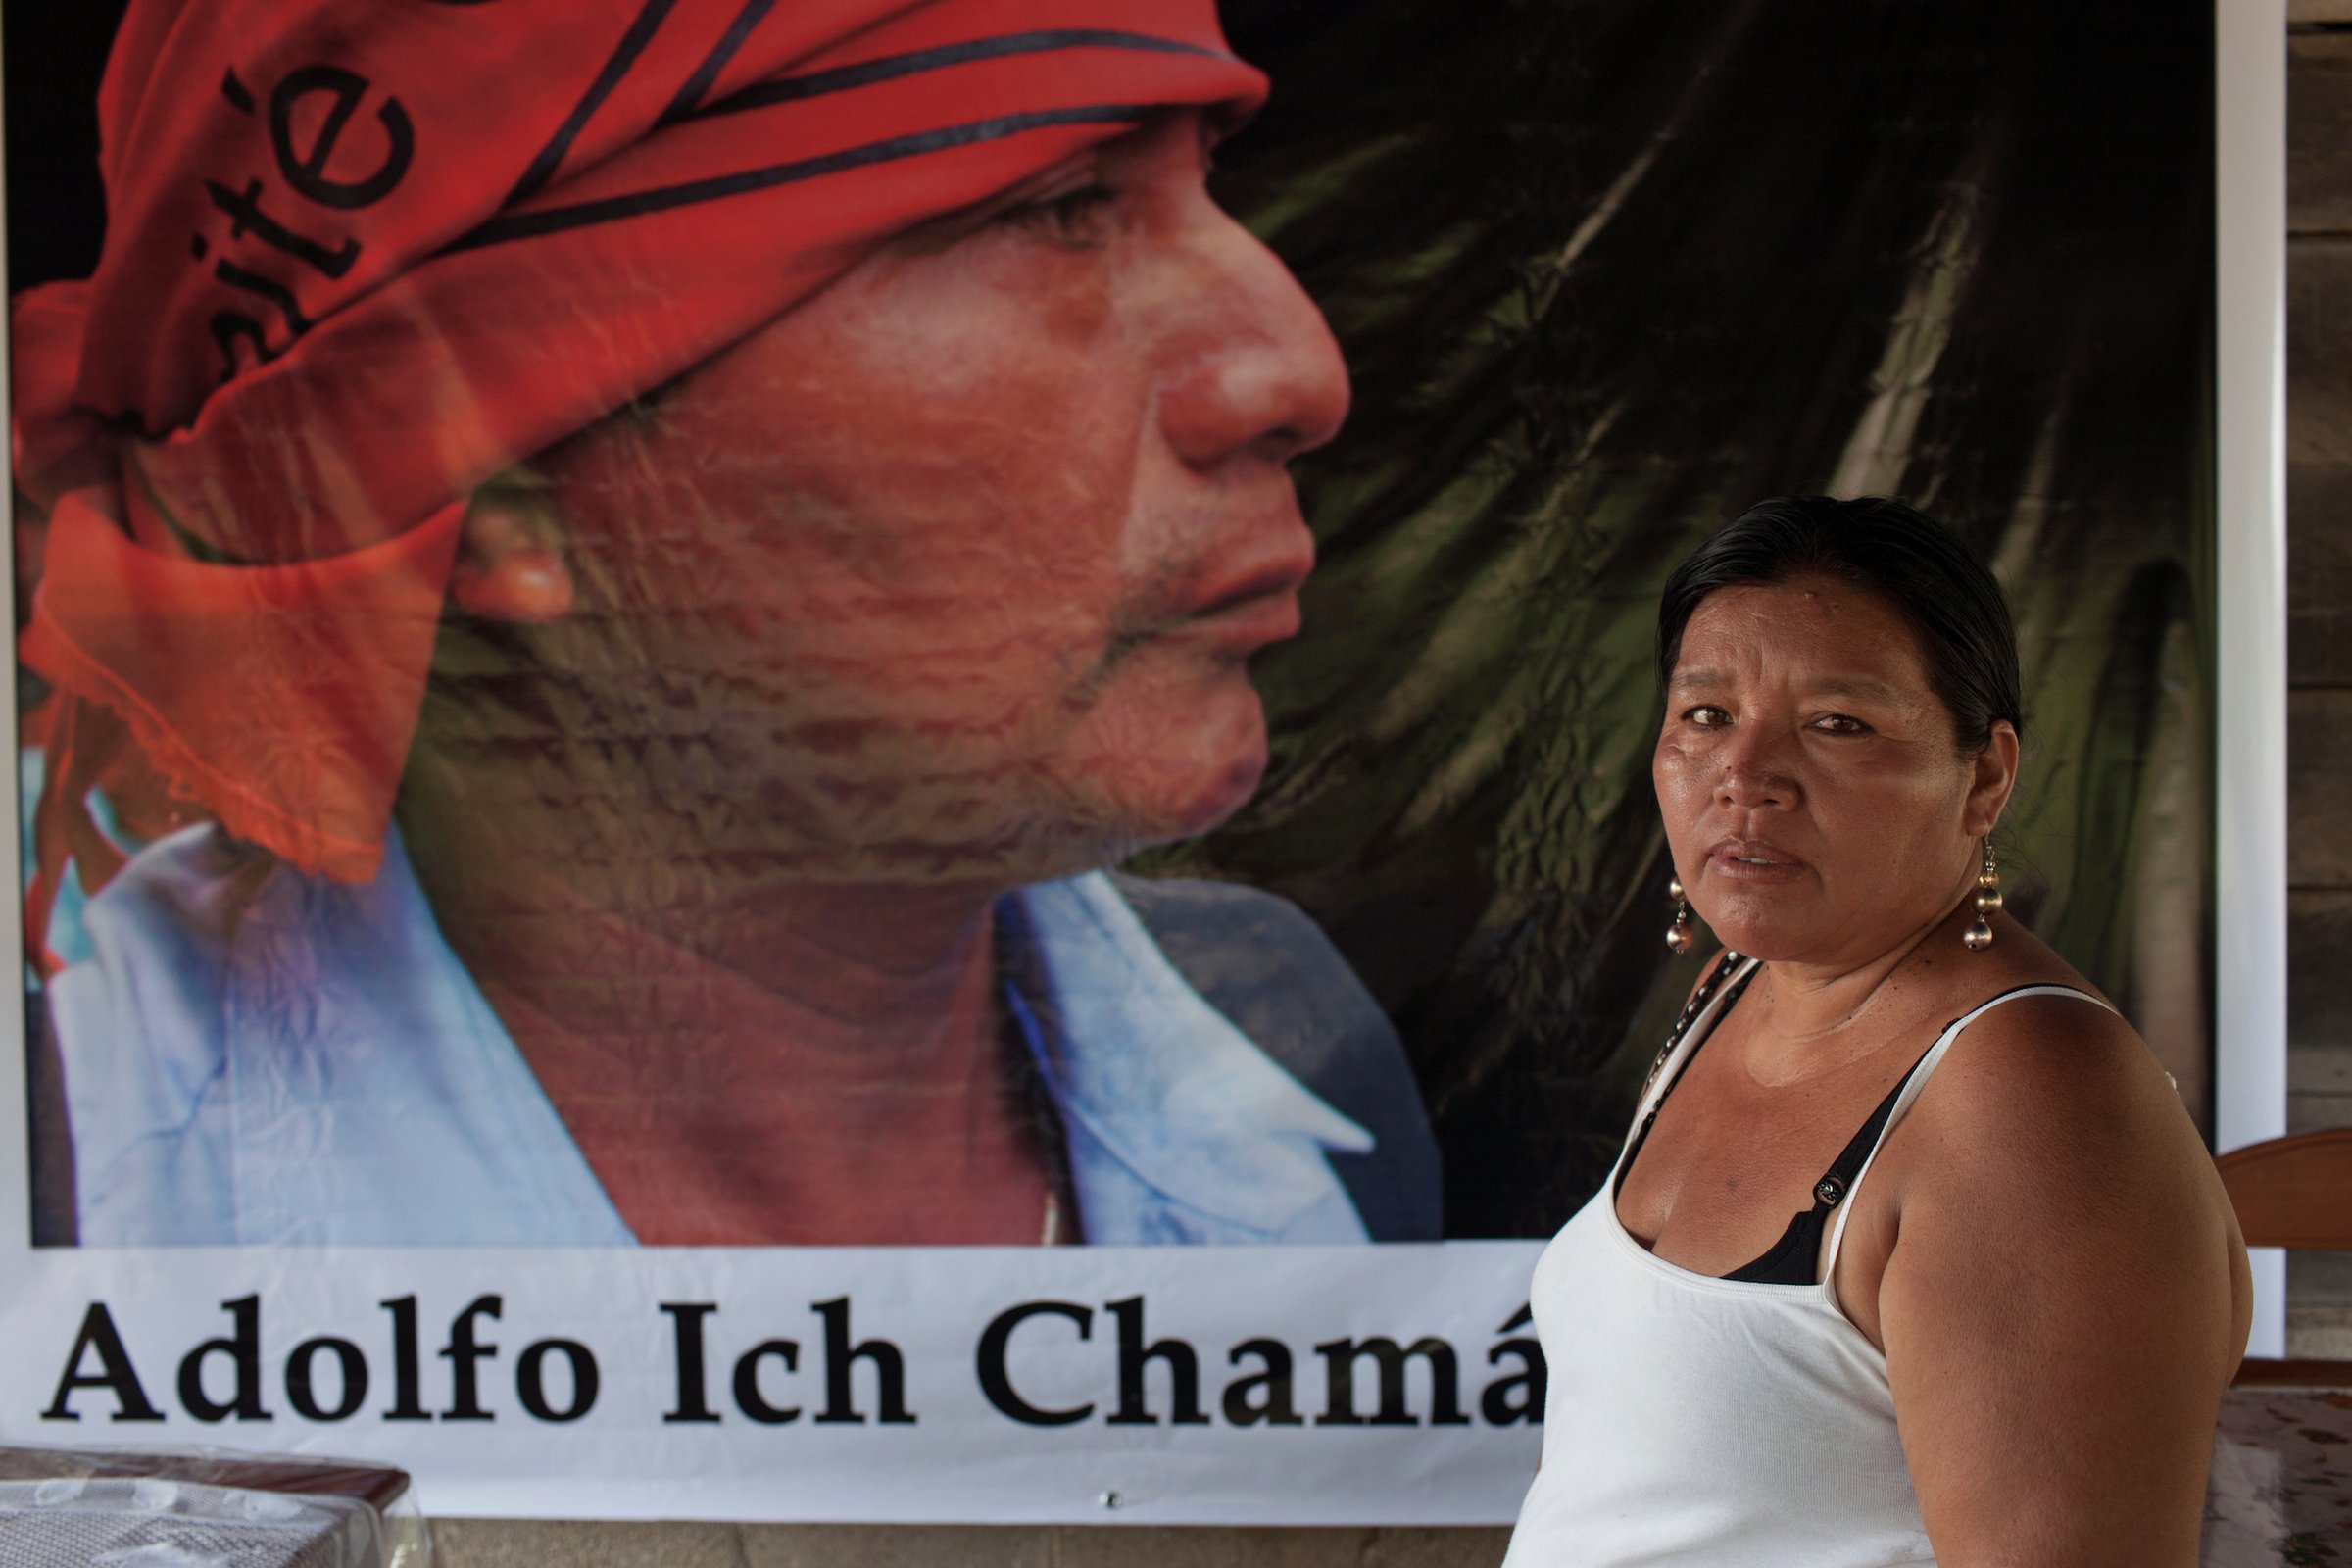 Анжелика Чок стоит перед знаменем с изображением своего убитого мужа, бывшего лидера общины майя Кекчи, учителя и борца за горнодобывающую деятельность Адольфо Ич